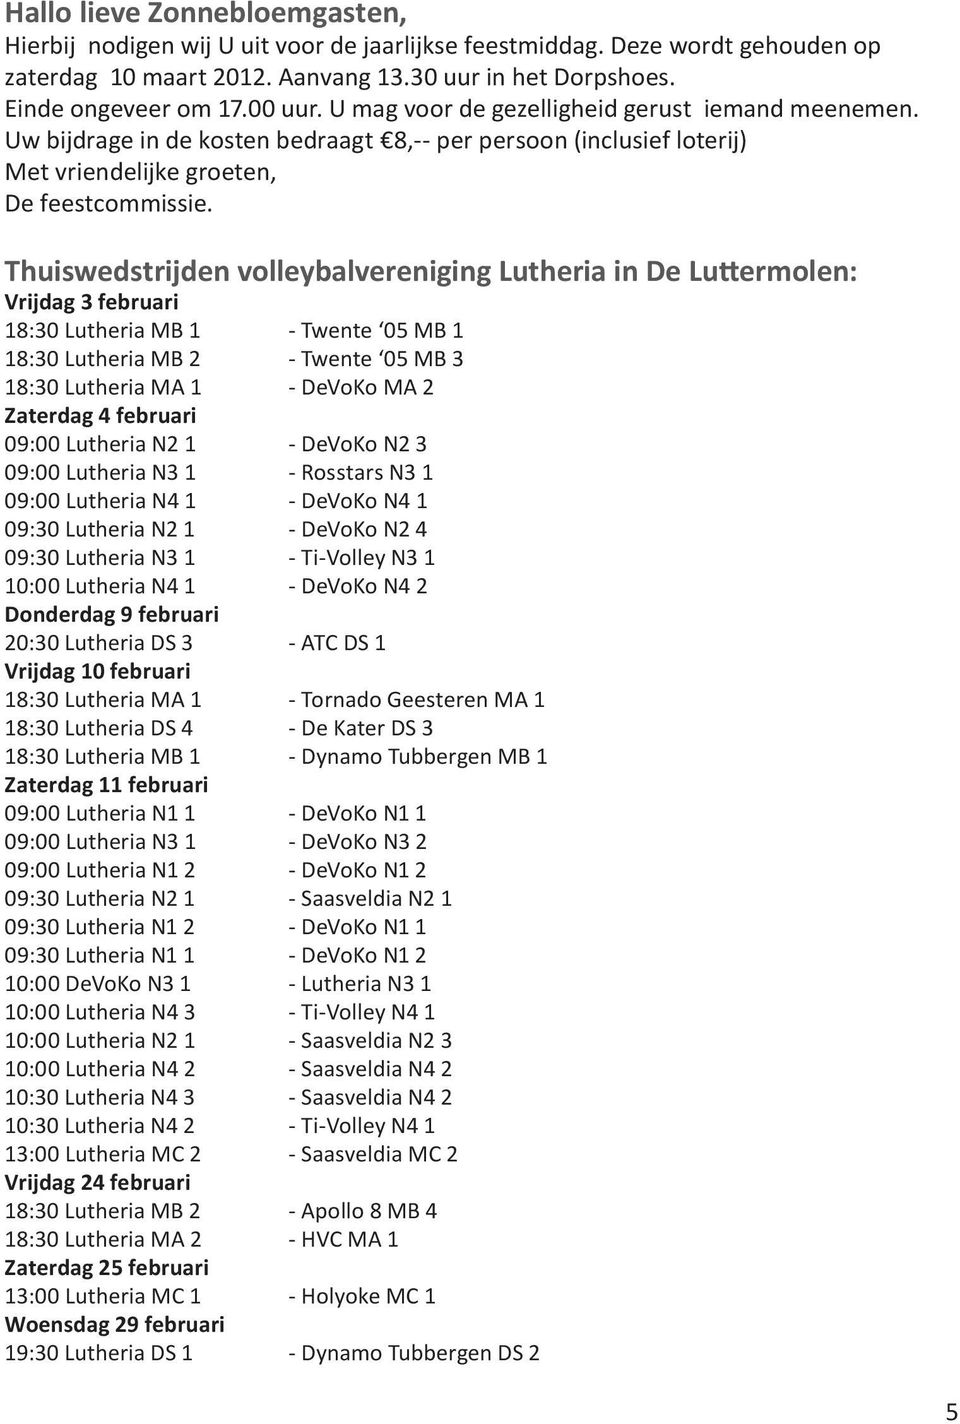 Thuiswedstrijden volleybalvereniging Lutheria in De Luttermolen: Vrijdag 3 februari 18:30 Lutheria MB 1 - Twente 05 MB 1 18:30 Lutheria MB 2 - Twente 05 MB 3 18:30 Lutheria MA 1 - DeVoKo MA 2